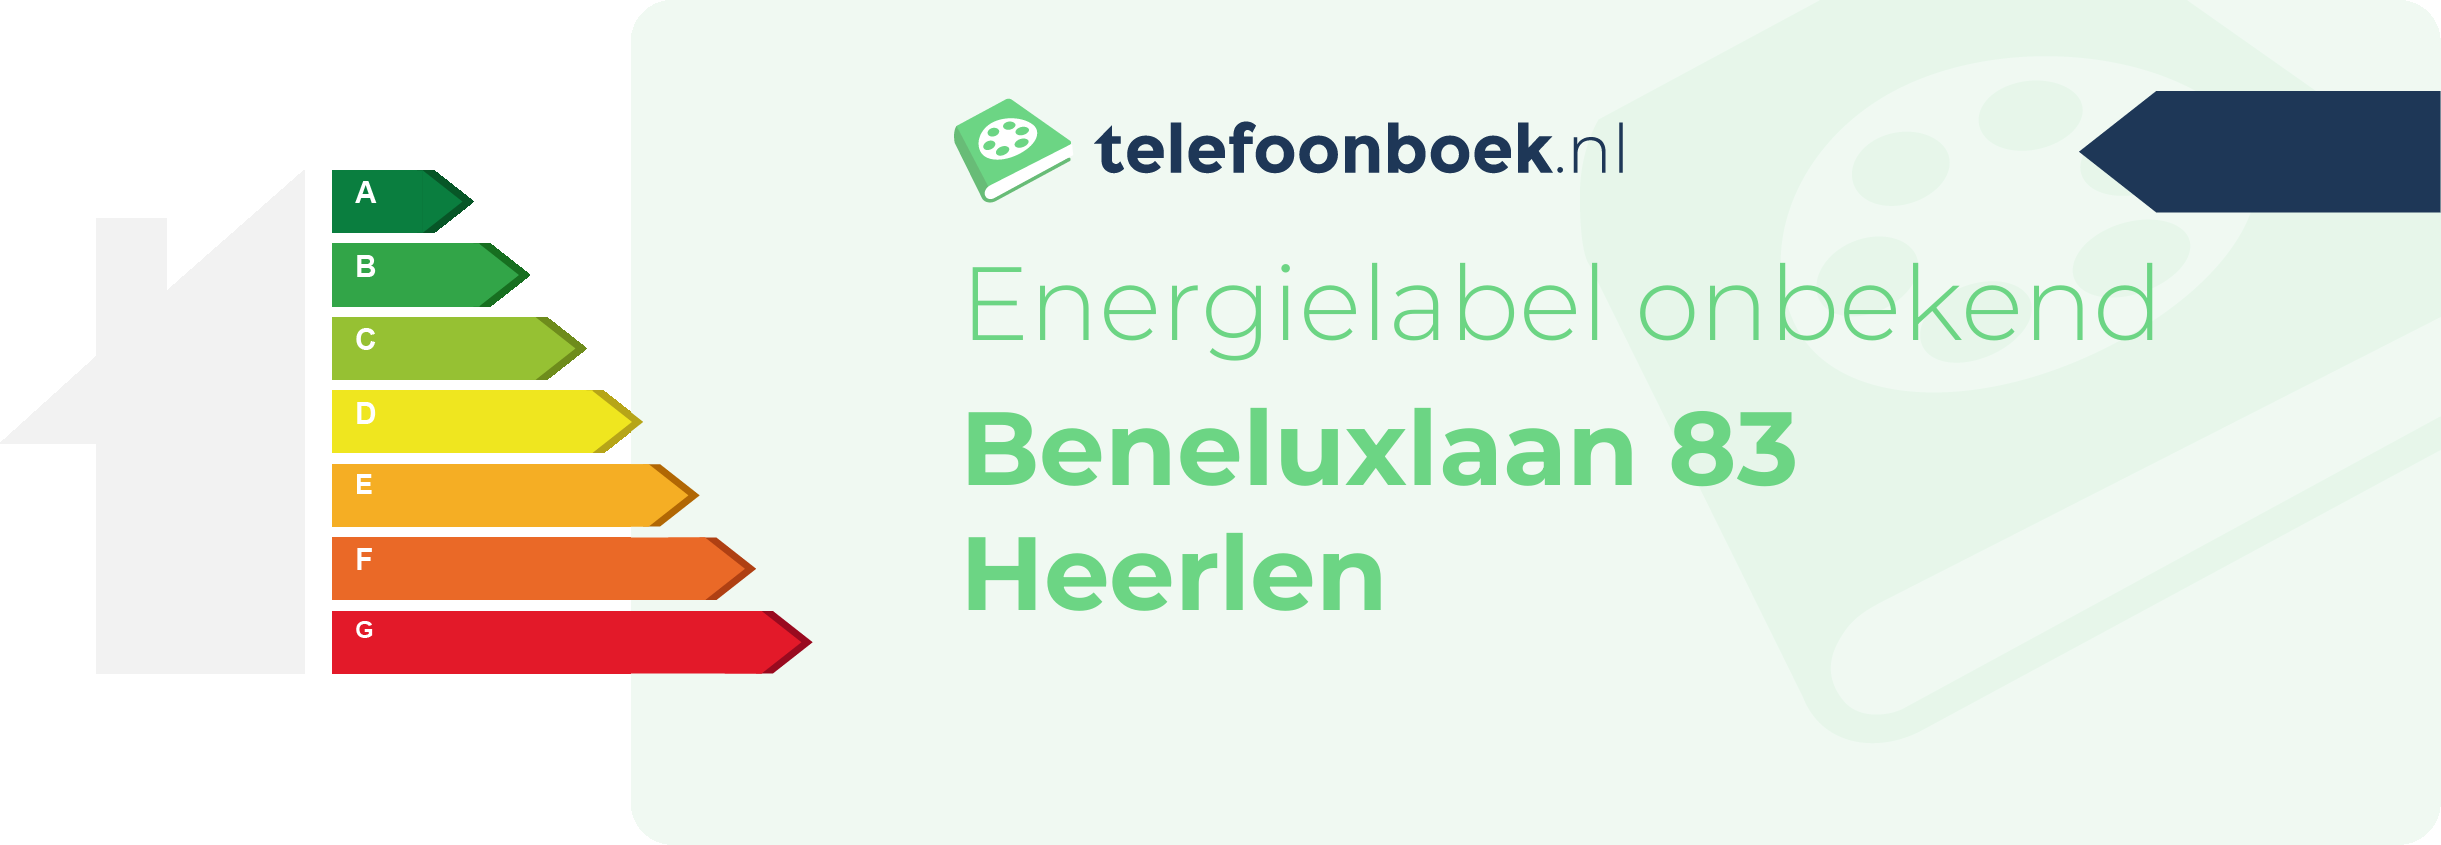 Energielabel Beneluxlaan 83 Heerlen